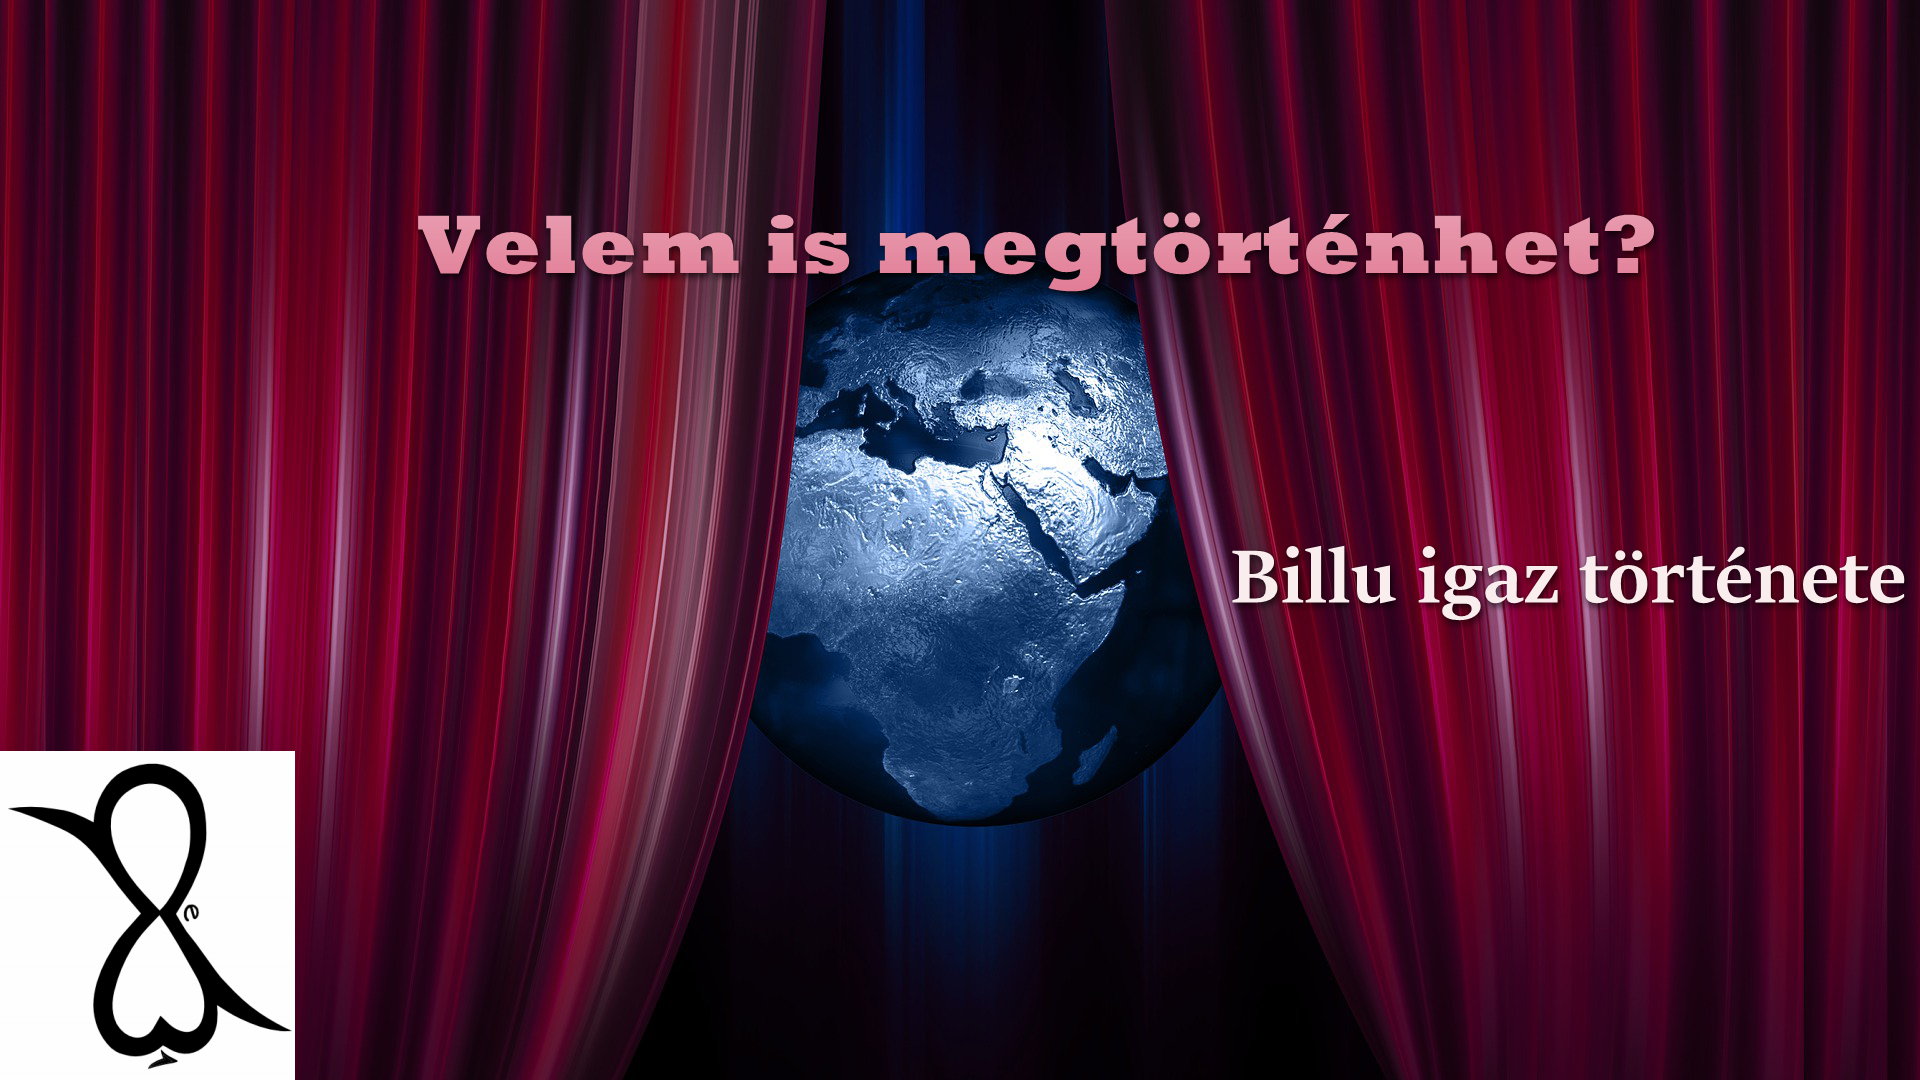 Read more about the article Velem is megtörténhet? (Billu igaz története)